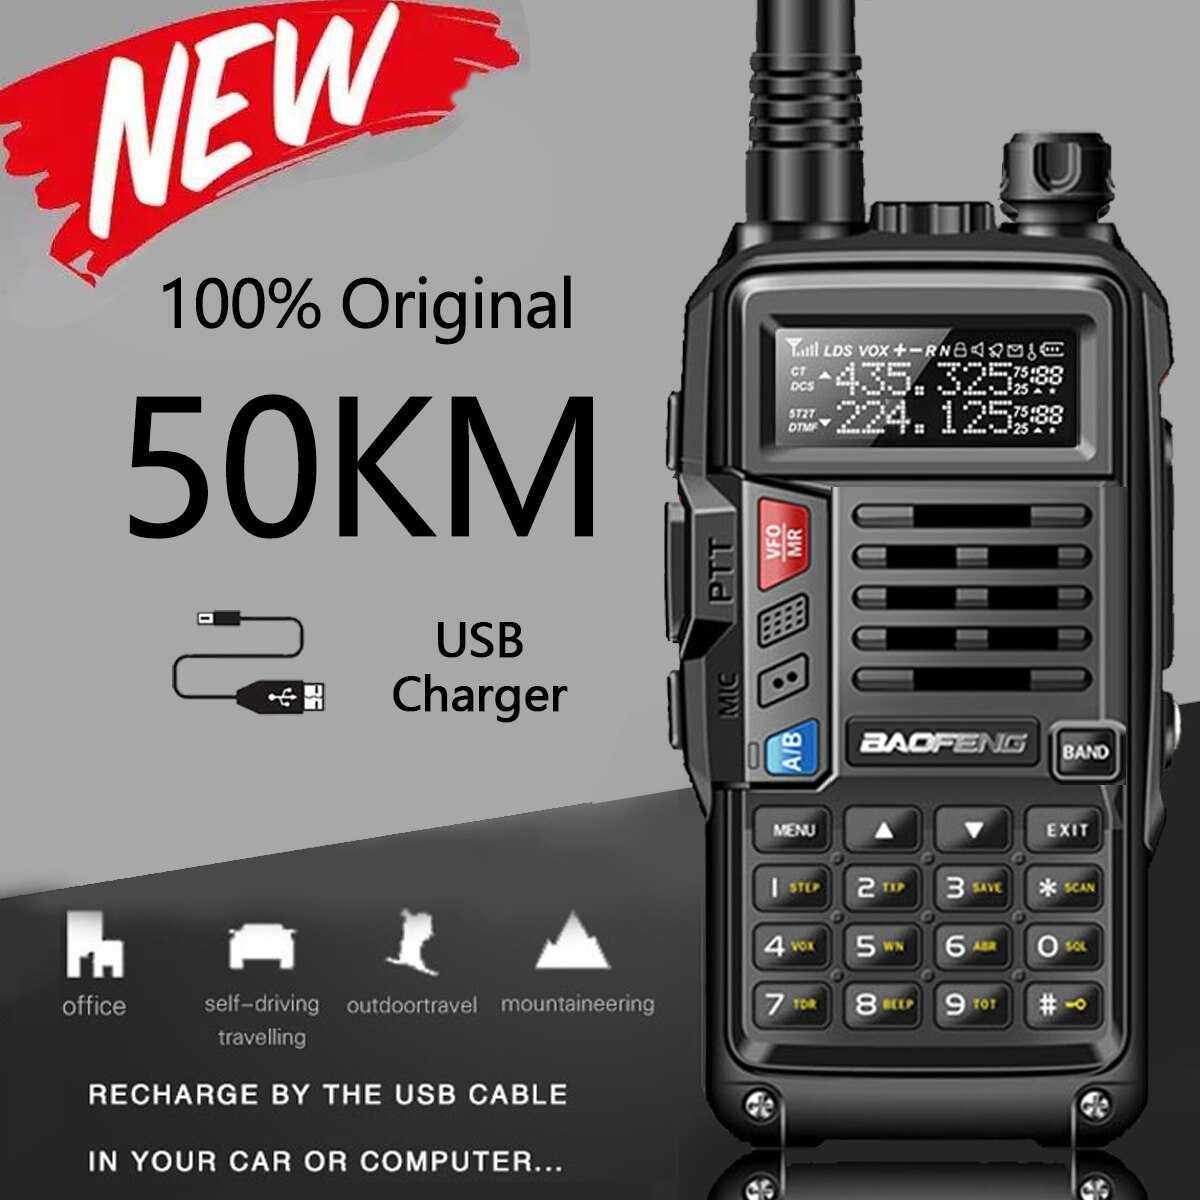 Statie radio 10W Baofeng UV-S9 PLUS, Casca cu microfon, 2 antene